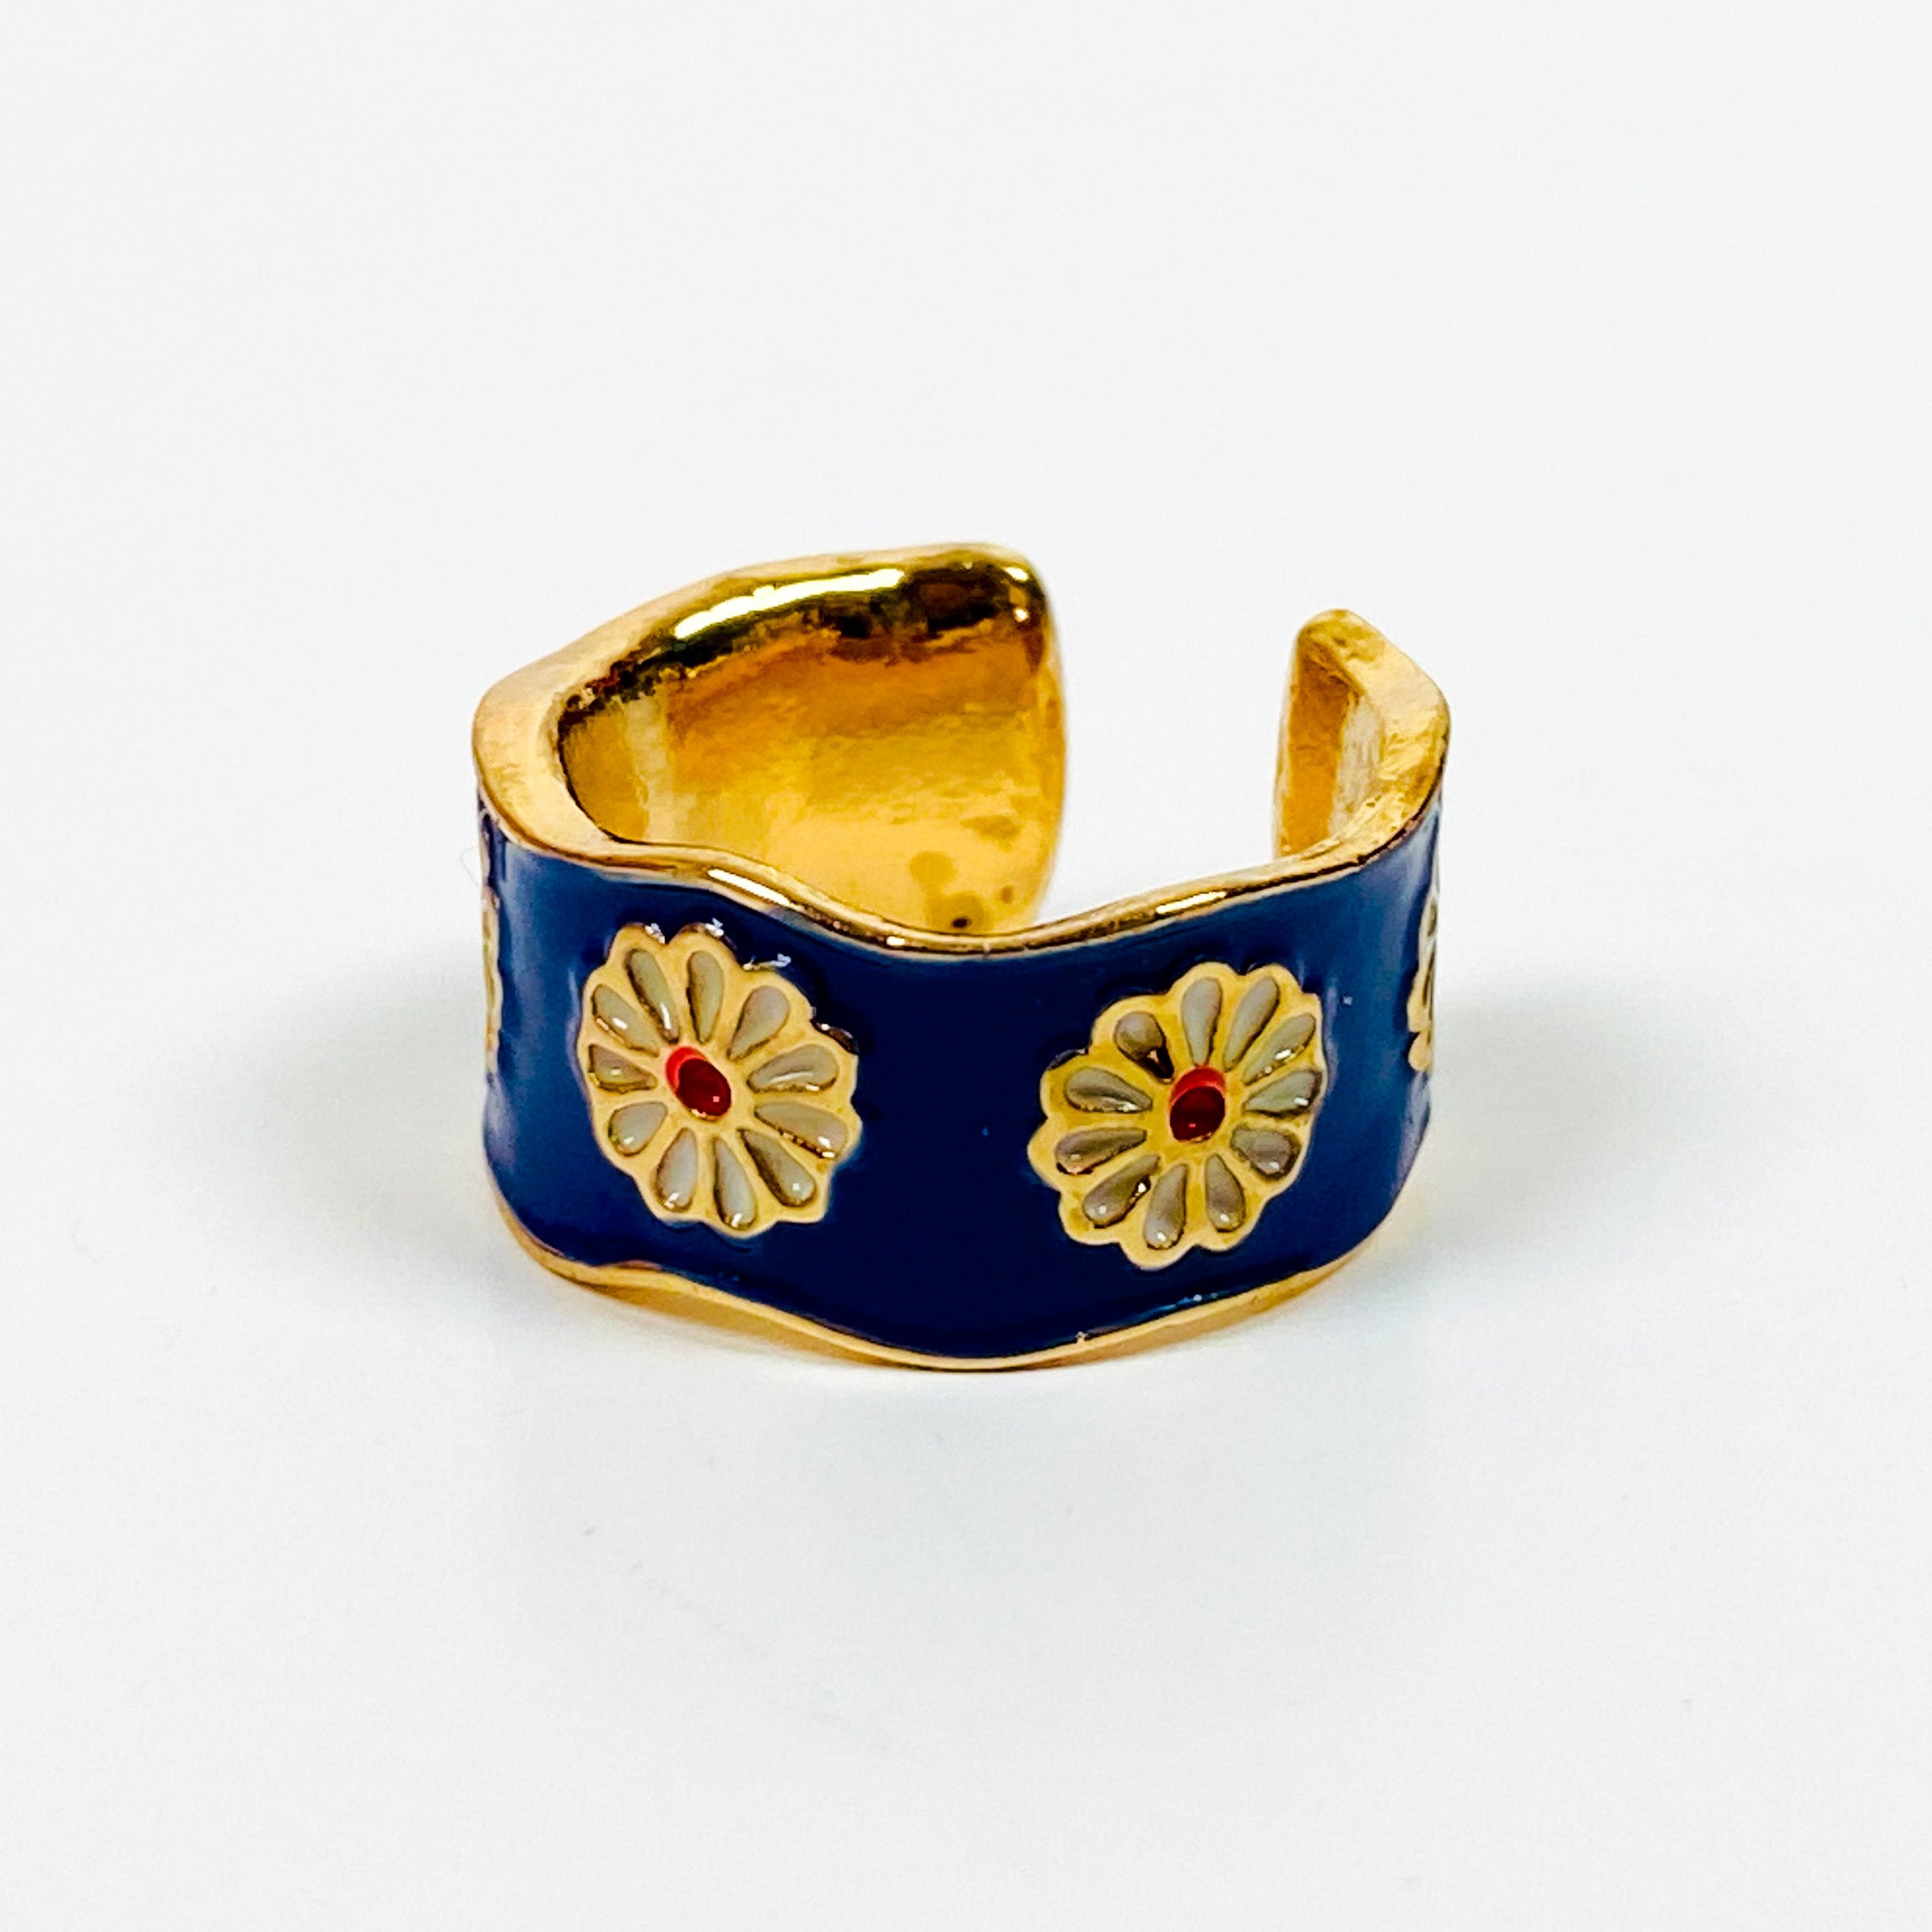 Vintage Retro Adjustable Flower Ring Gold